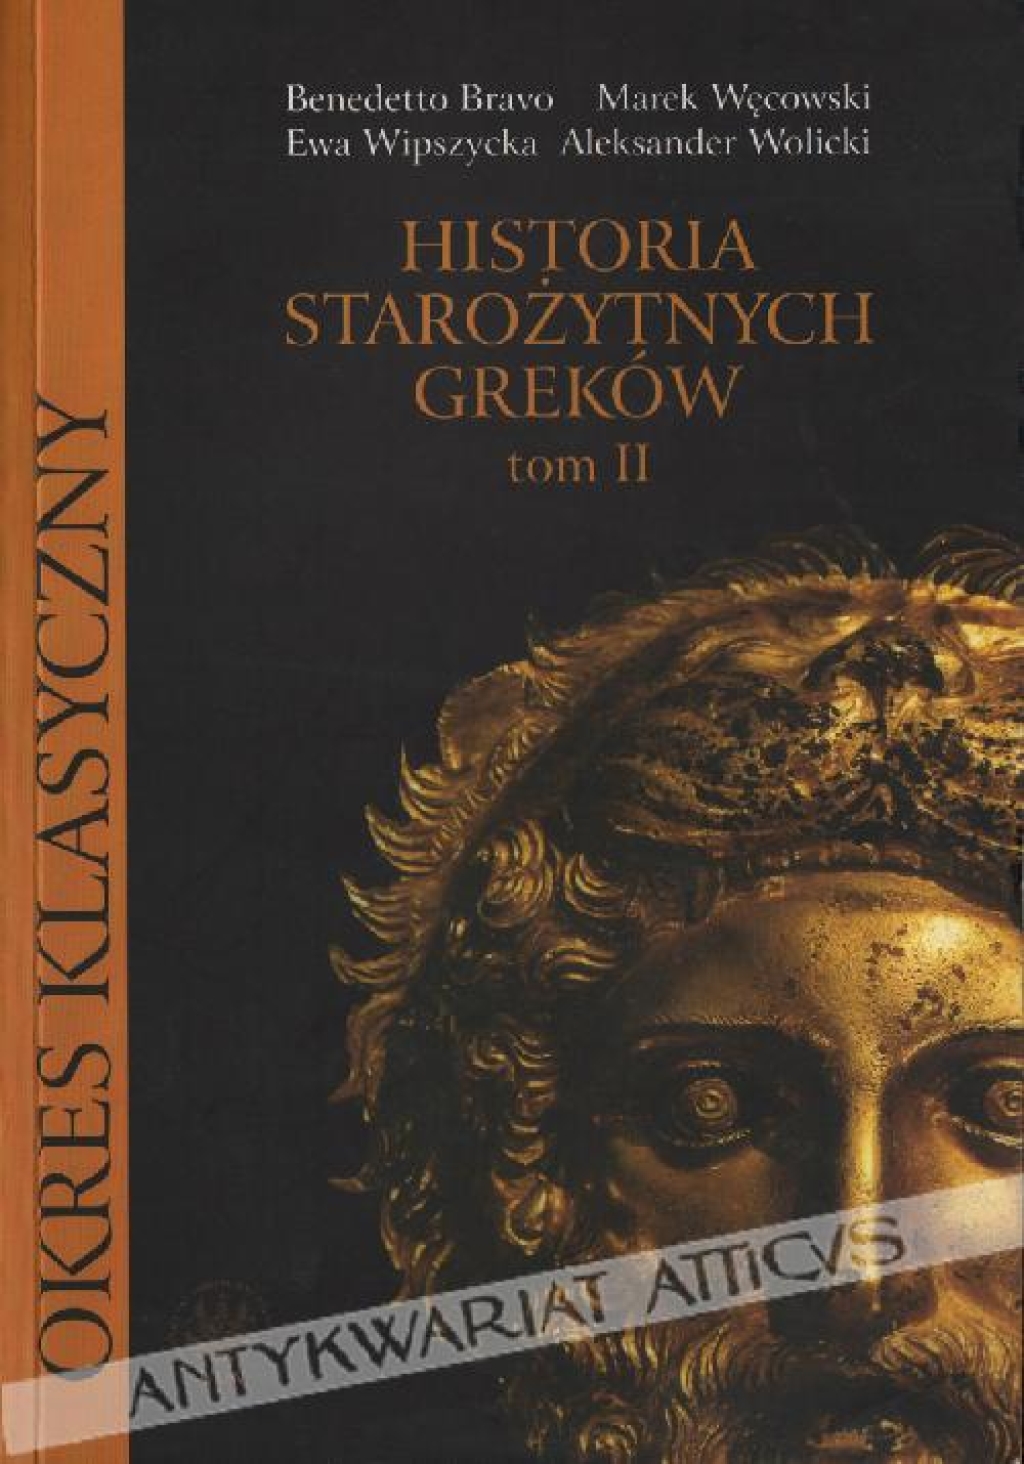 Historia starożytnych Greków, t. II - Okres klasyczny